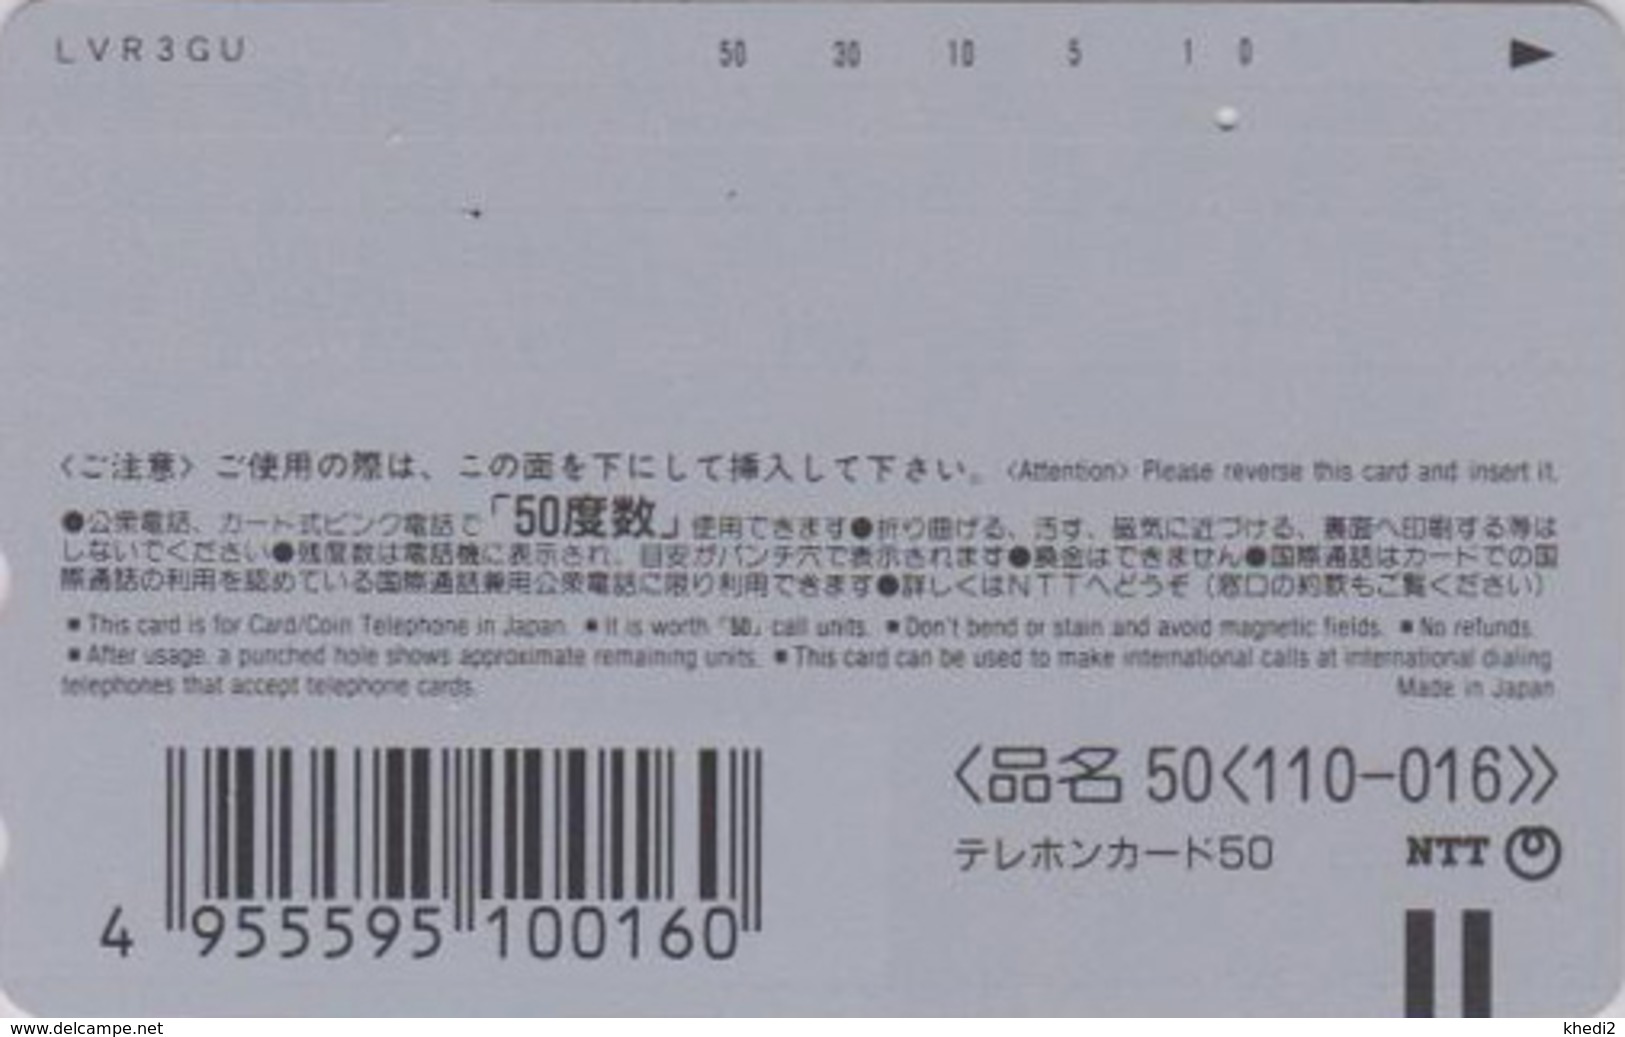 Télécarte Japon / 110-016 - MANGA - CLAMP - CARDCAPTOR SAKURA ** ONE PUNCH ** - Japan Phonecard - MOVIC - 10215 - Comics